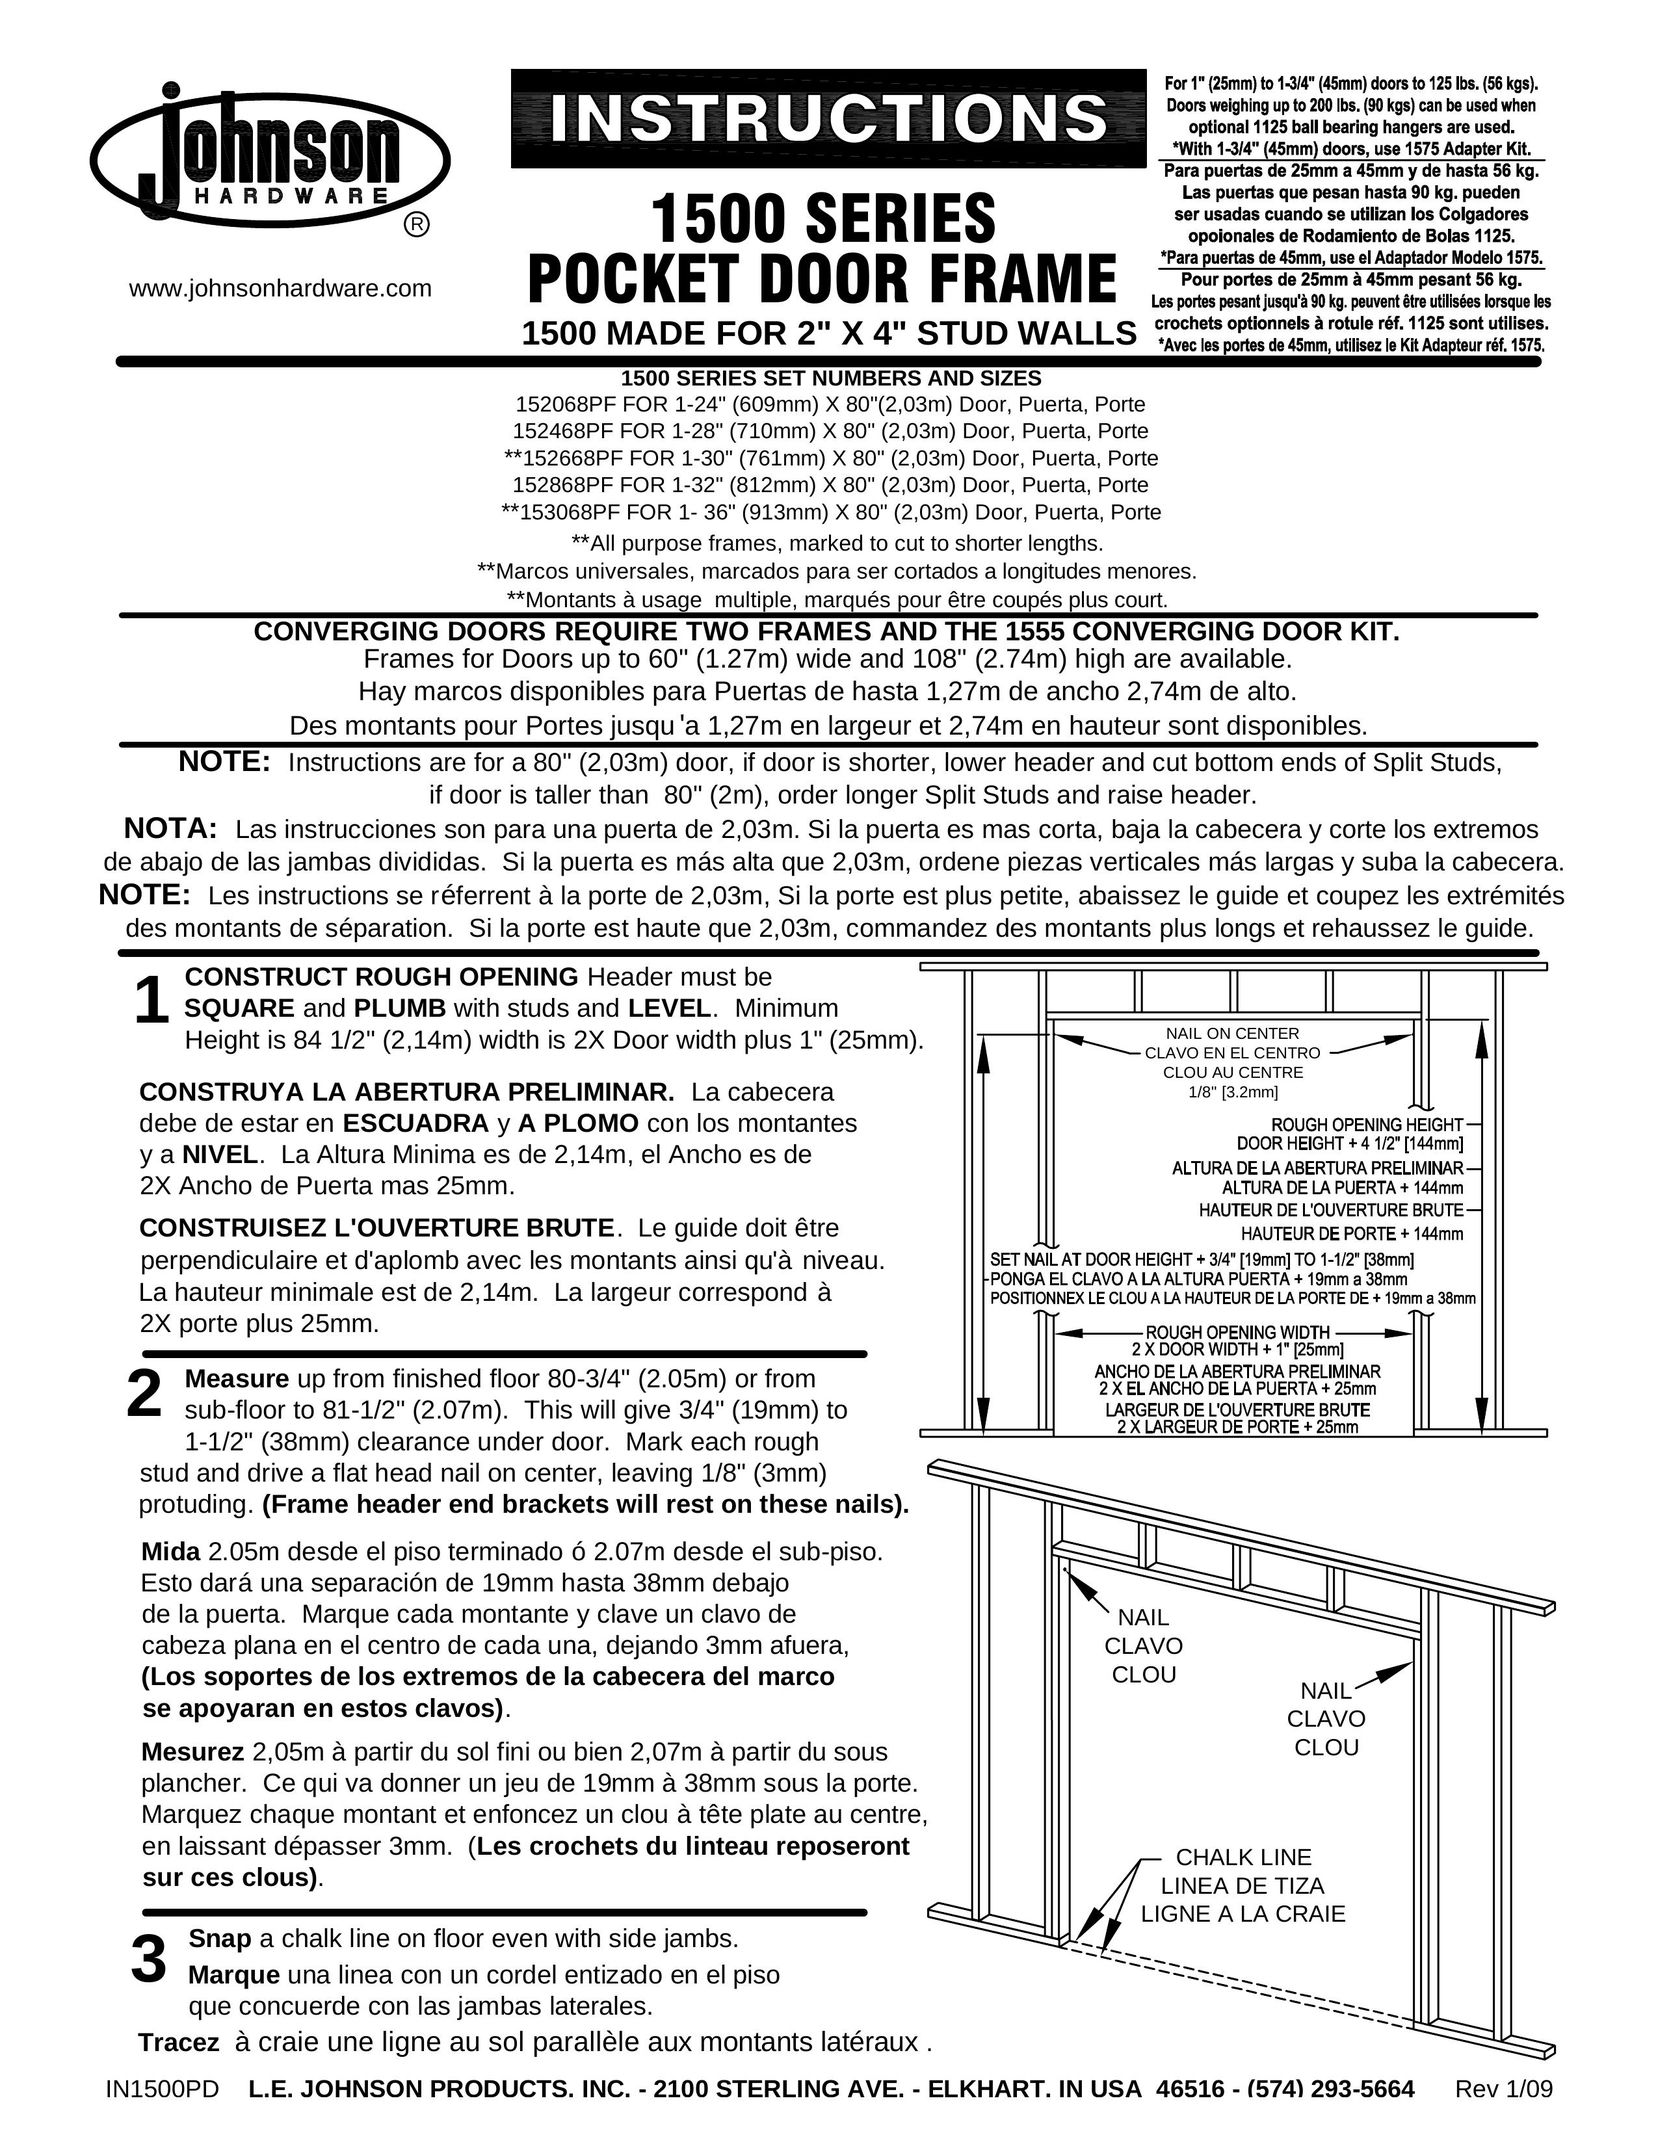 Johnson Hardware 153068PF Door User Manual